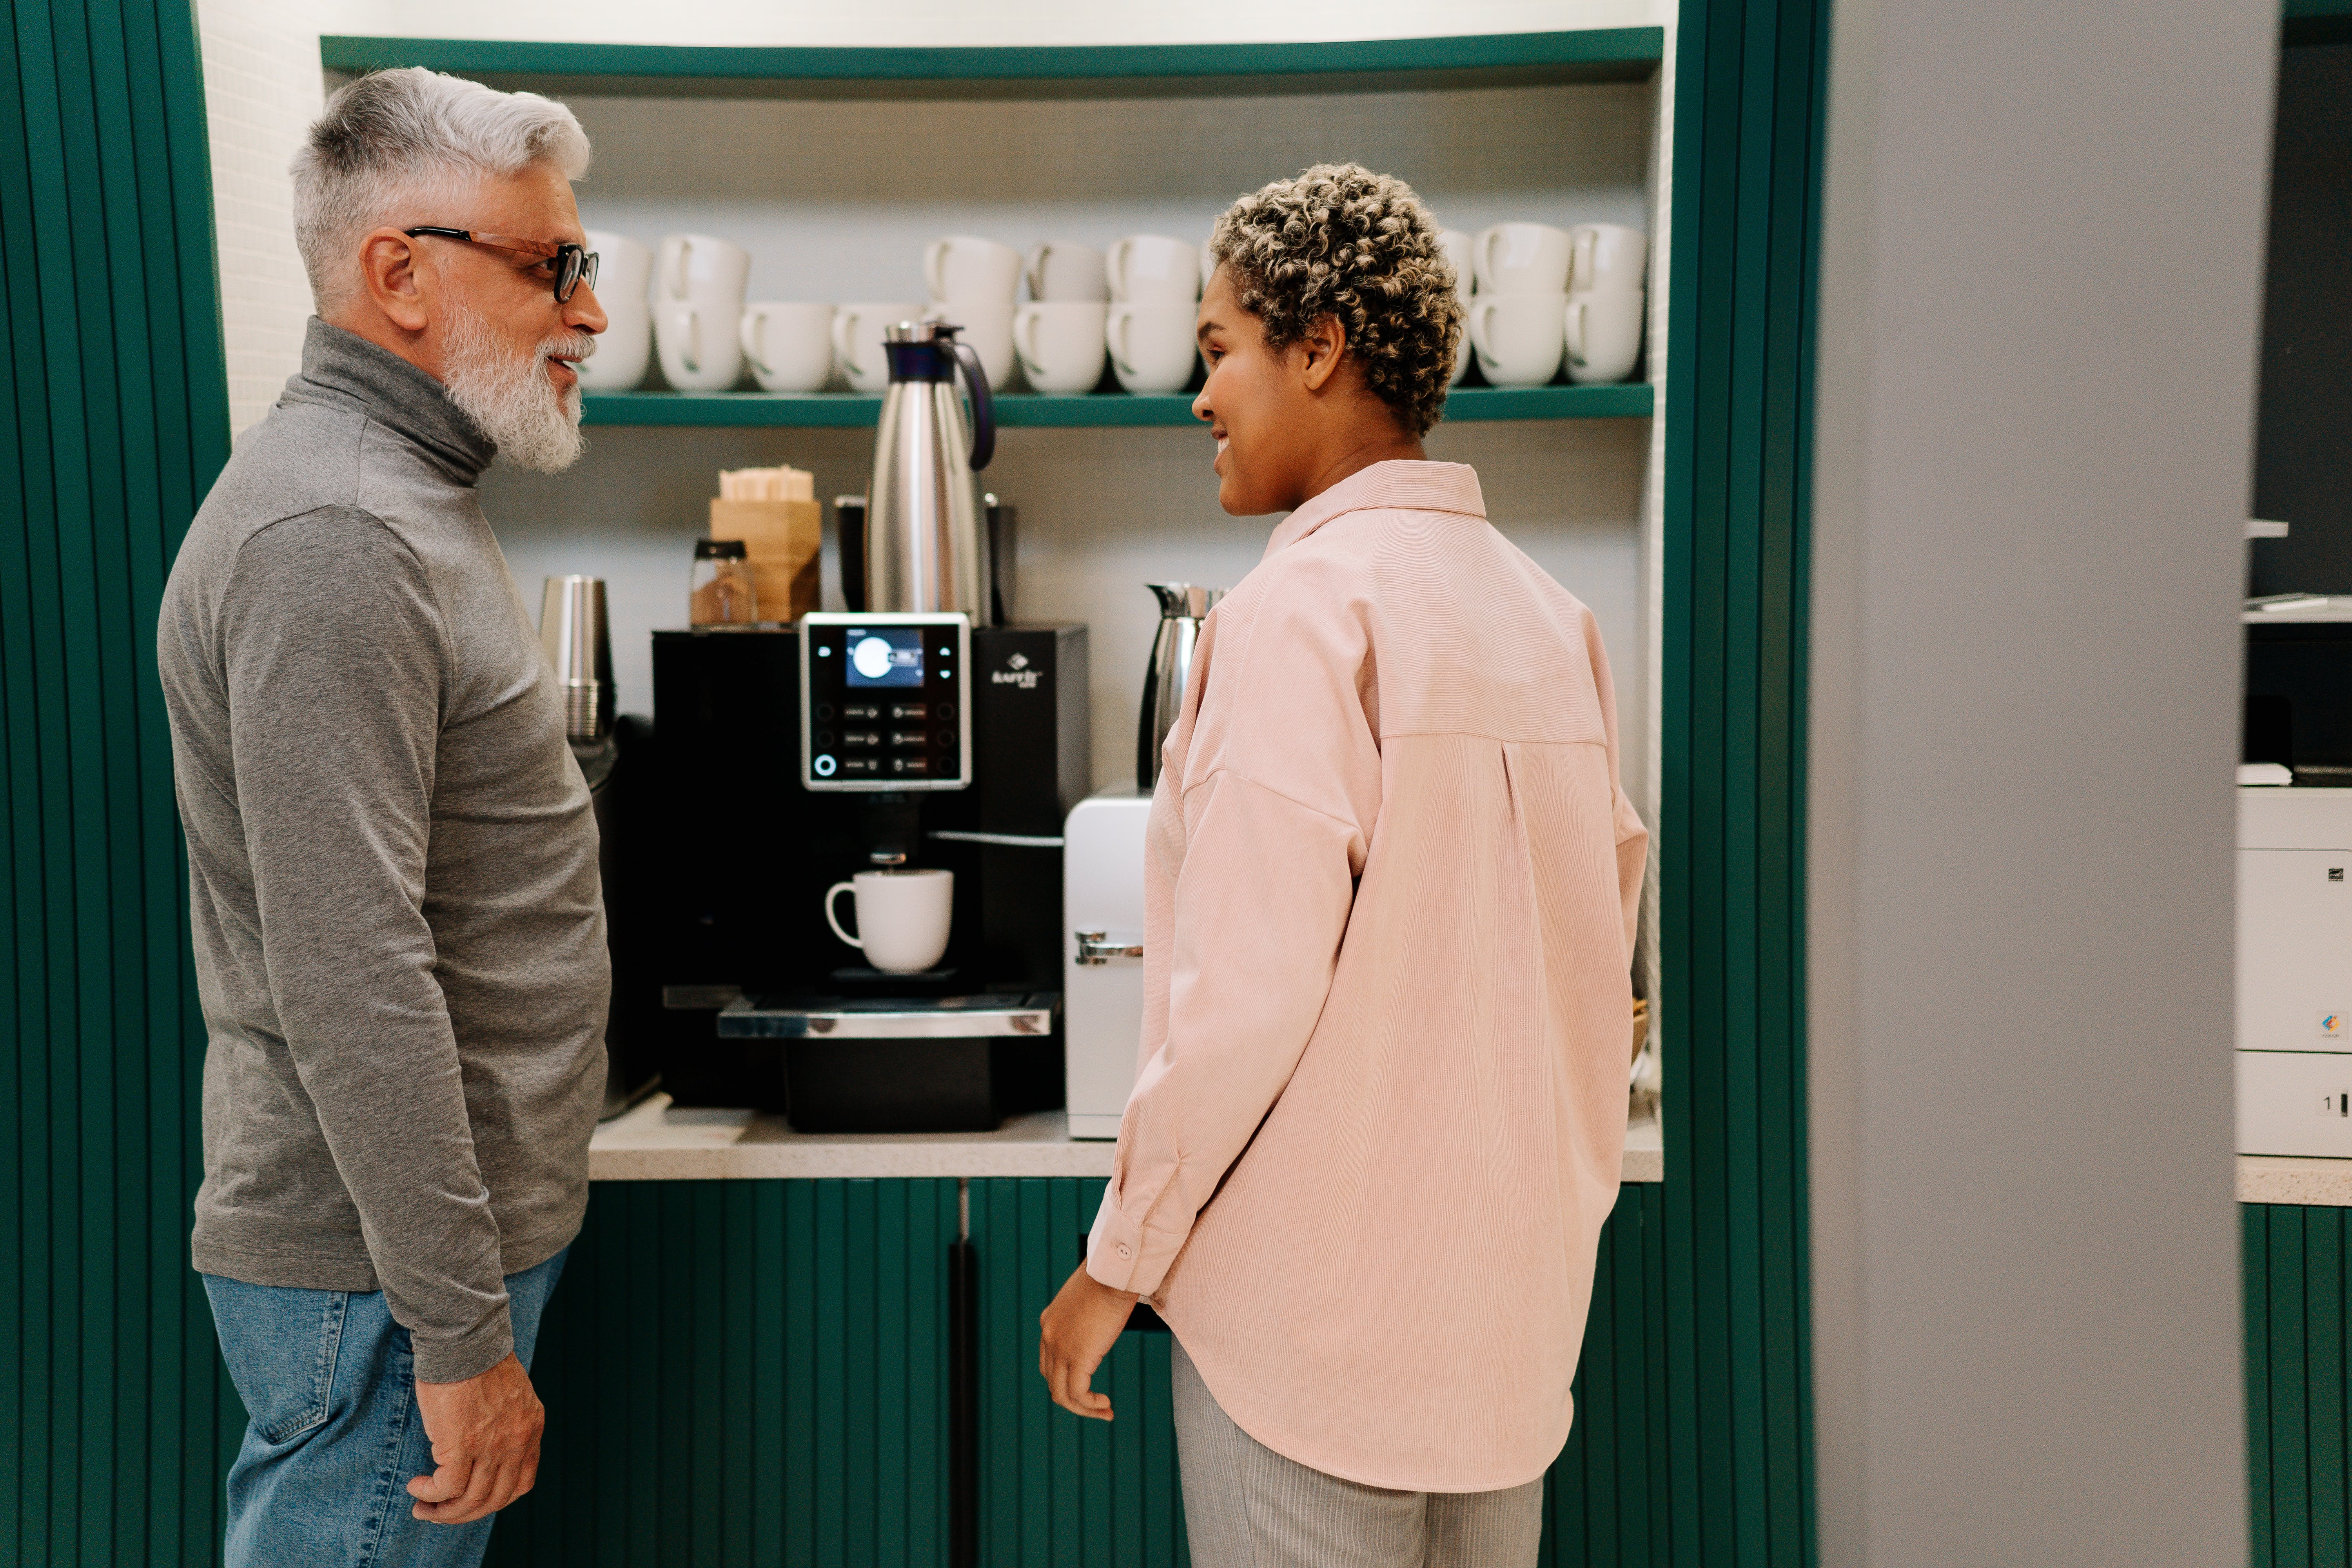 Ein älterer Mann spricht mit einer jüngeren Frau, während er vor einer Kaffeemaschine steht | Quelle: Pexels